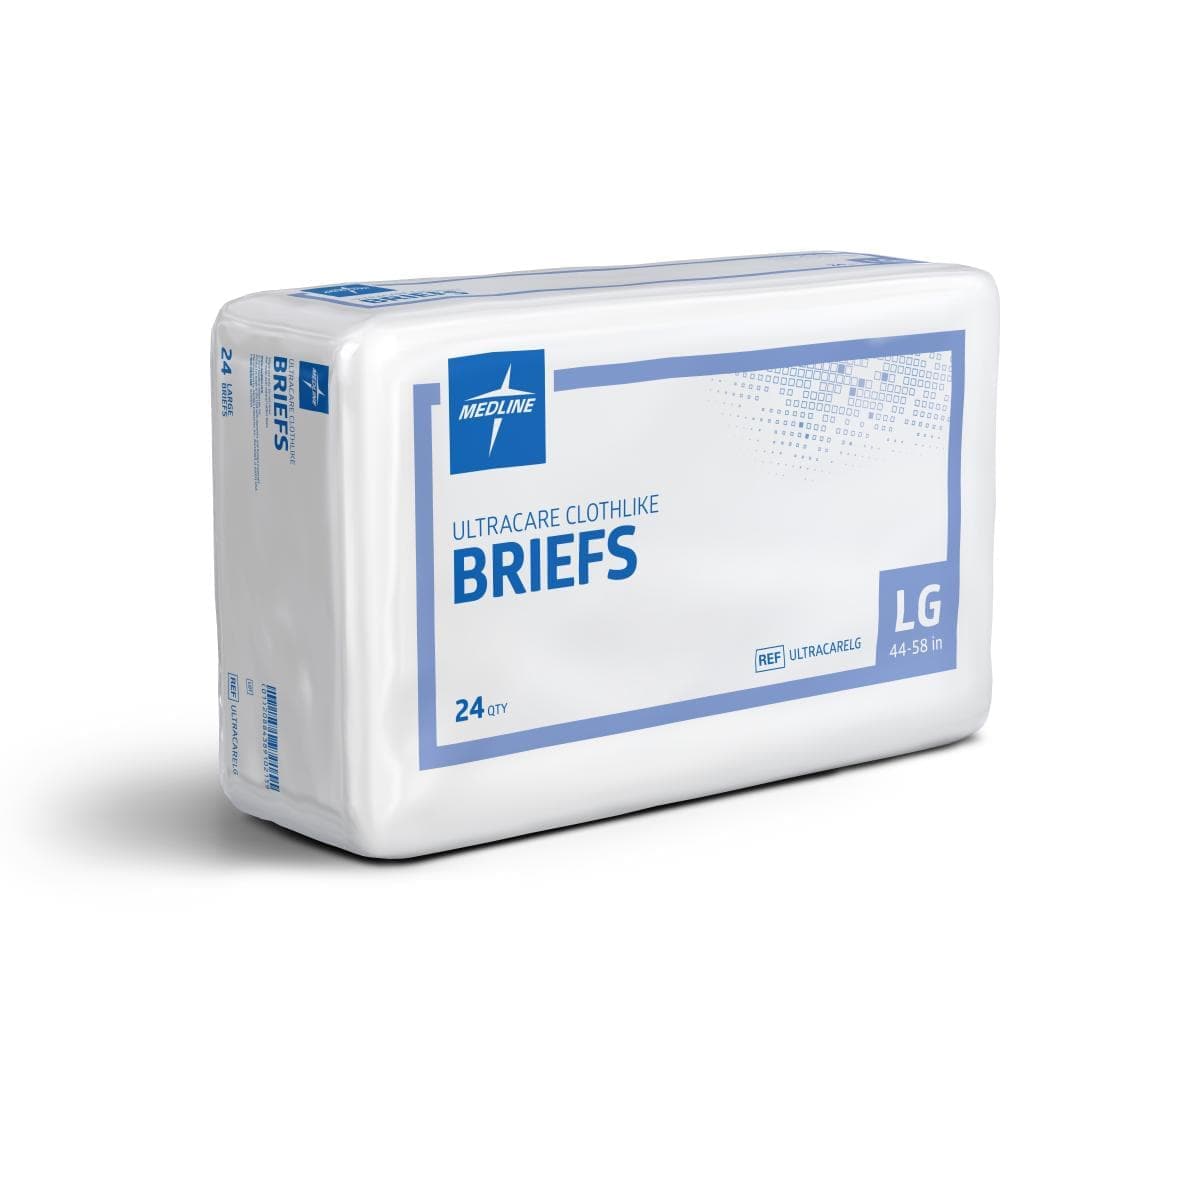 Medline Bag of 24 / LG(44-58) Medline Ultracare Adult Incontinence Briefs